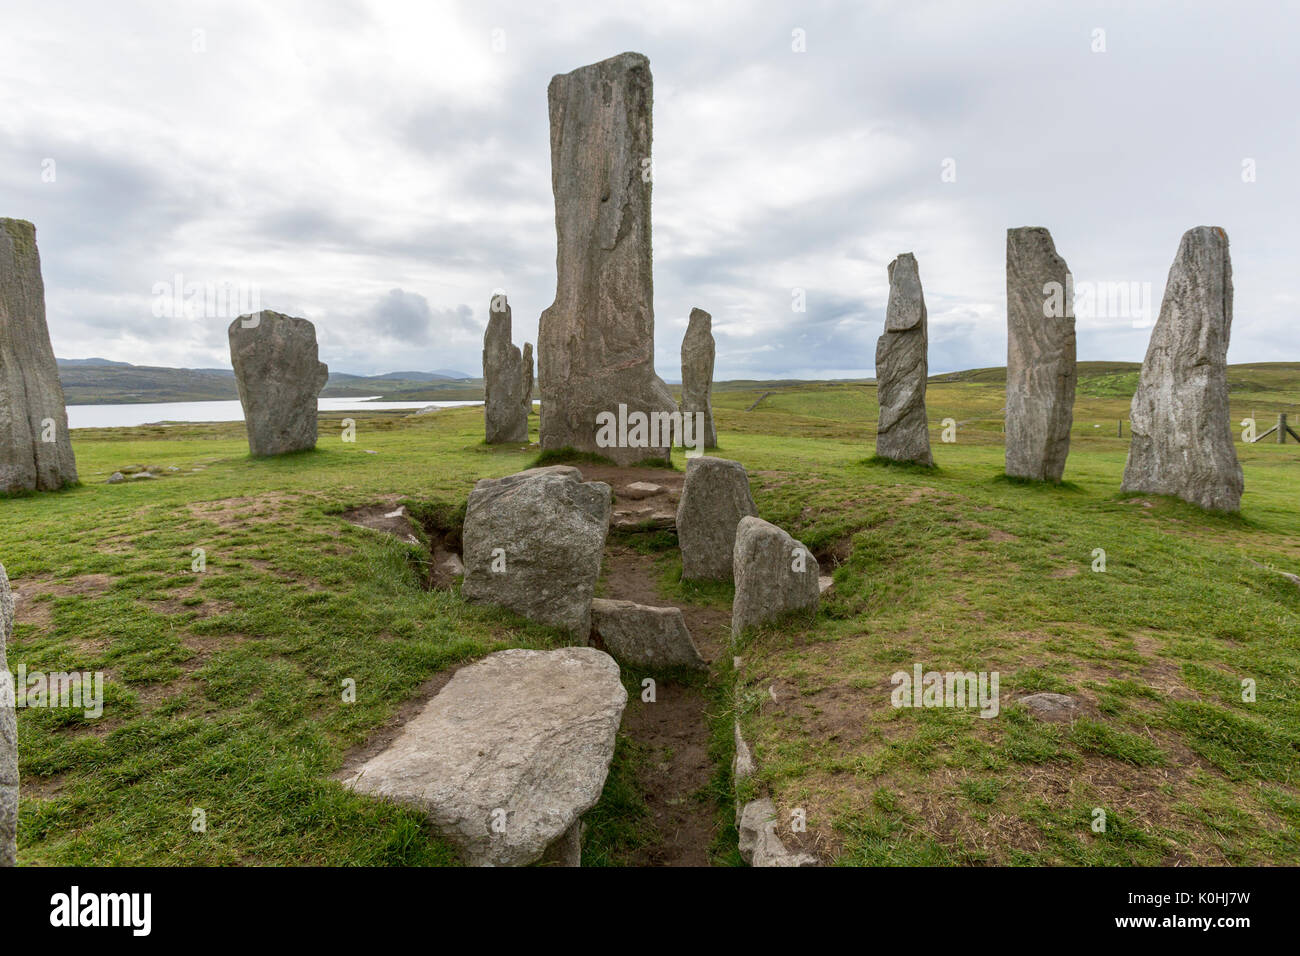 Chambered tomba, Callanish Standing pietre pietre permanente posto in una configurazione a croce con al centro un cerchio di pietra, Callanish, Scotland, Regno Unito Foto Stock